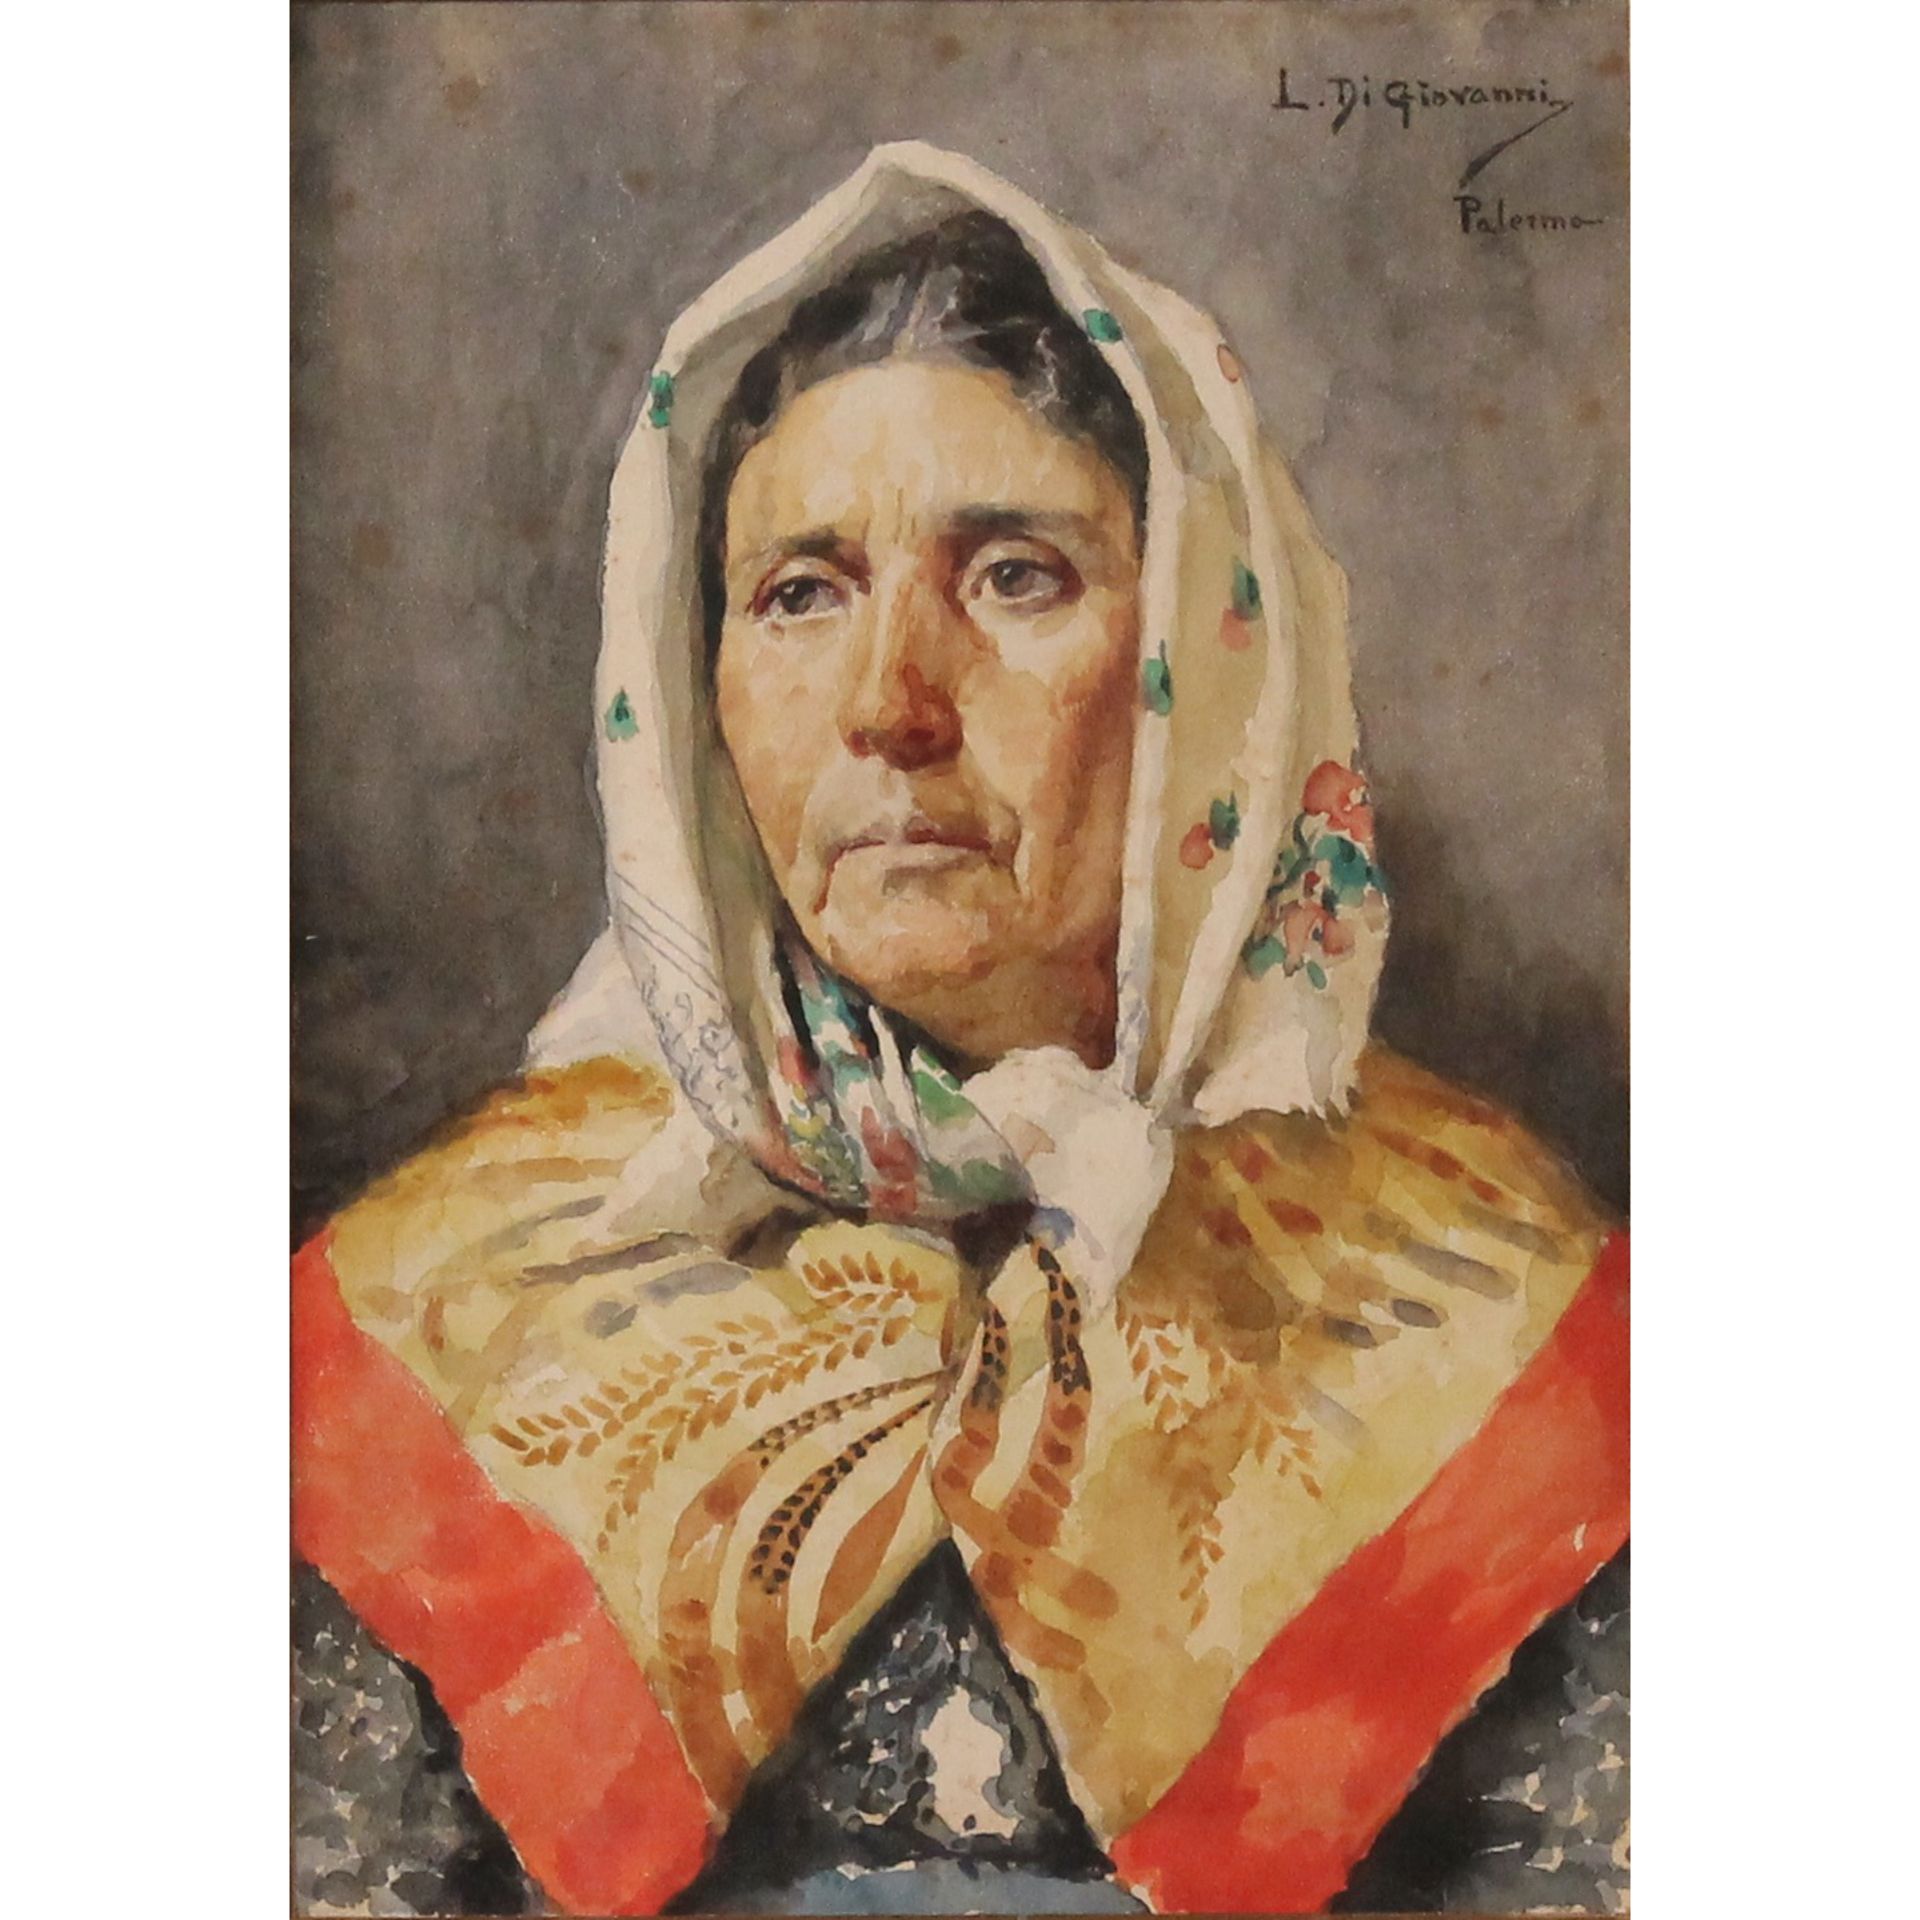 Luigi Di Giovanni (1856/1938) "Popolana" - "Farmer girl"